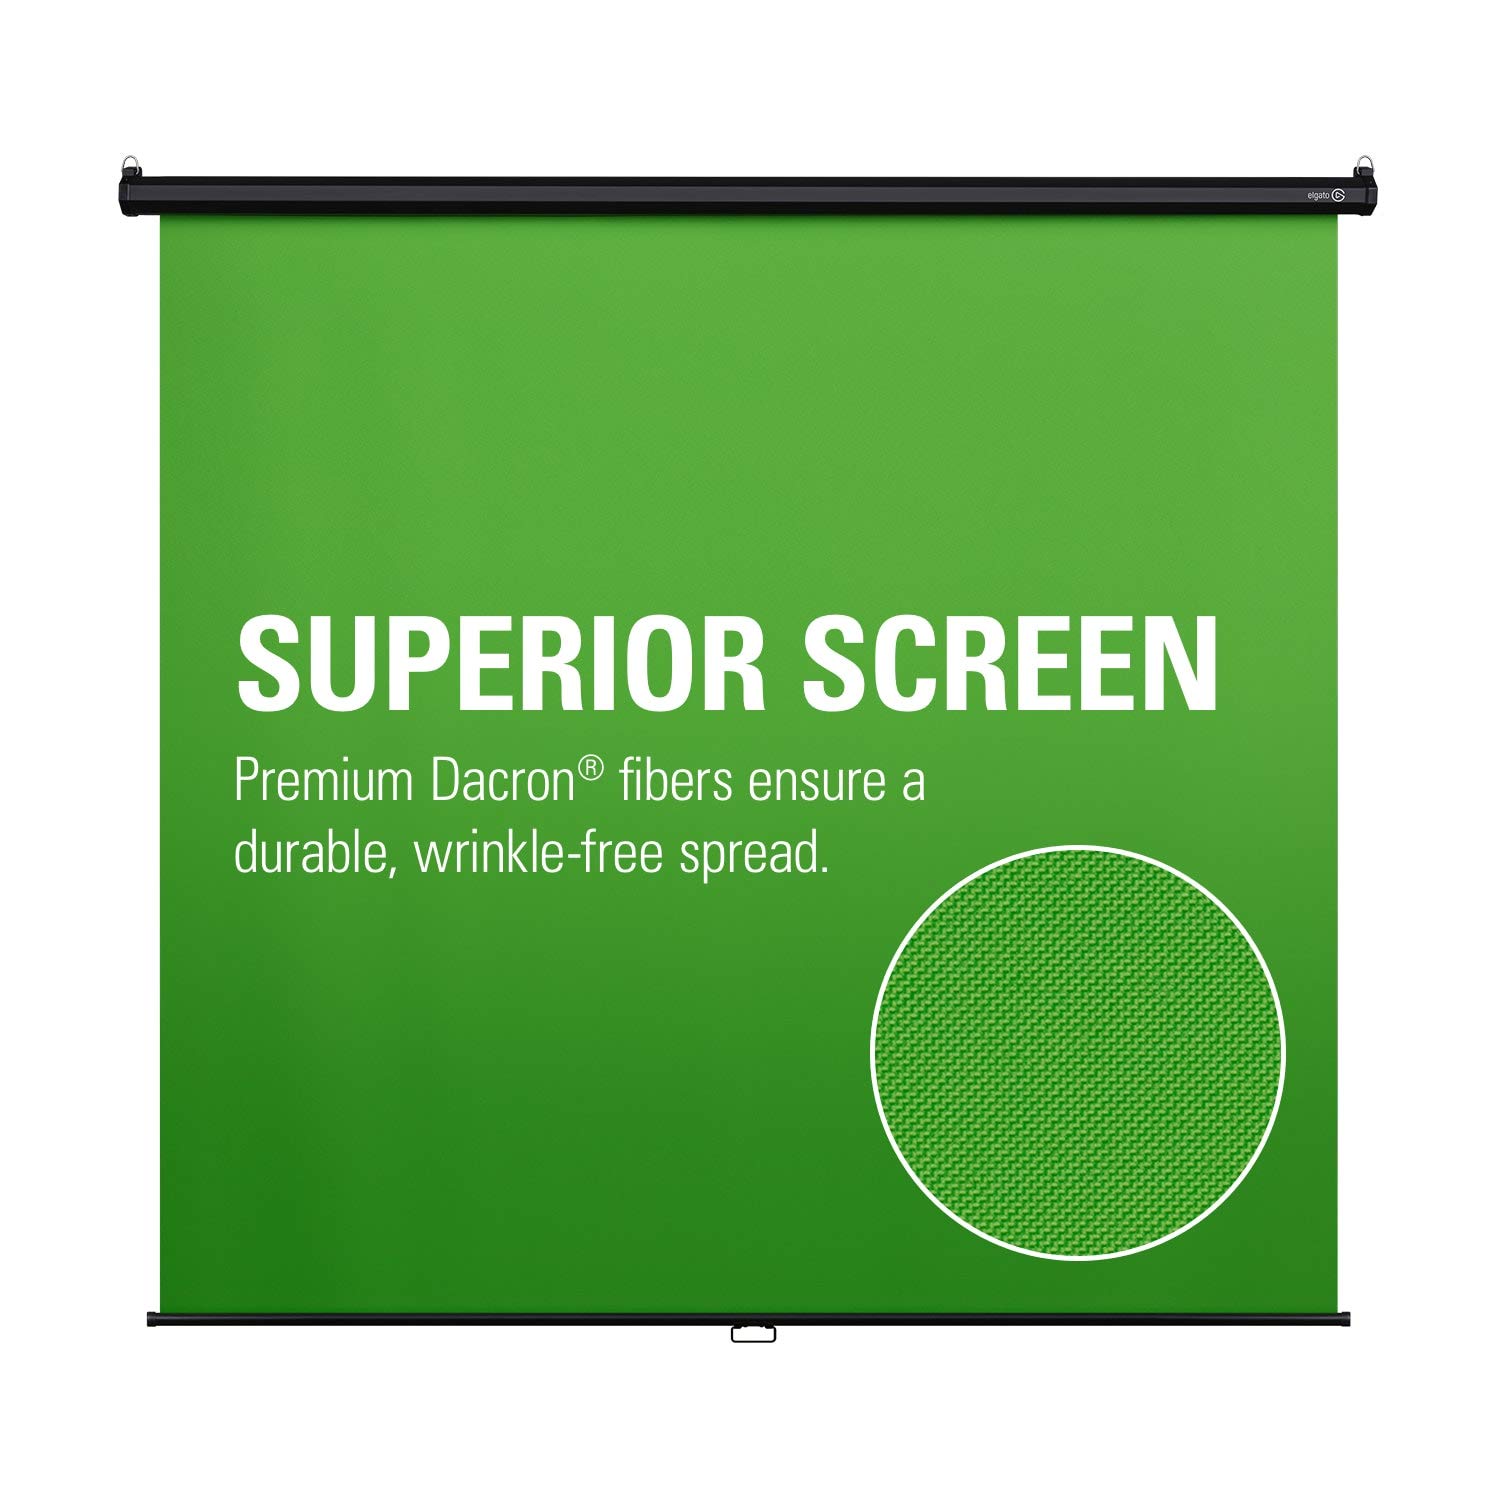 Hãy chiêm ngưỡng chiếc màn xanh Elgato Green Screen MT hoàn hảo cho các nhiếp ảnh gia, các nhà sản xuất video, livestreamer và những người yêu thích sự sáng tạo. Được thiết kế gọn nhẹ và dễ dàng mang đi bất cứ đâu, Elgato Green Screen MT sẽ là công cụ hữu ích giúp bạn viết nên những câu chuyện tuyệt vời.